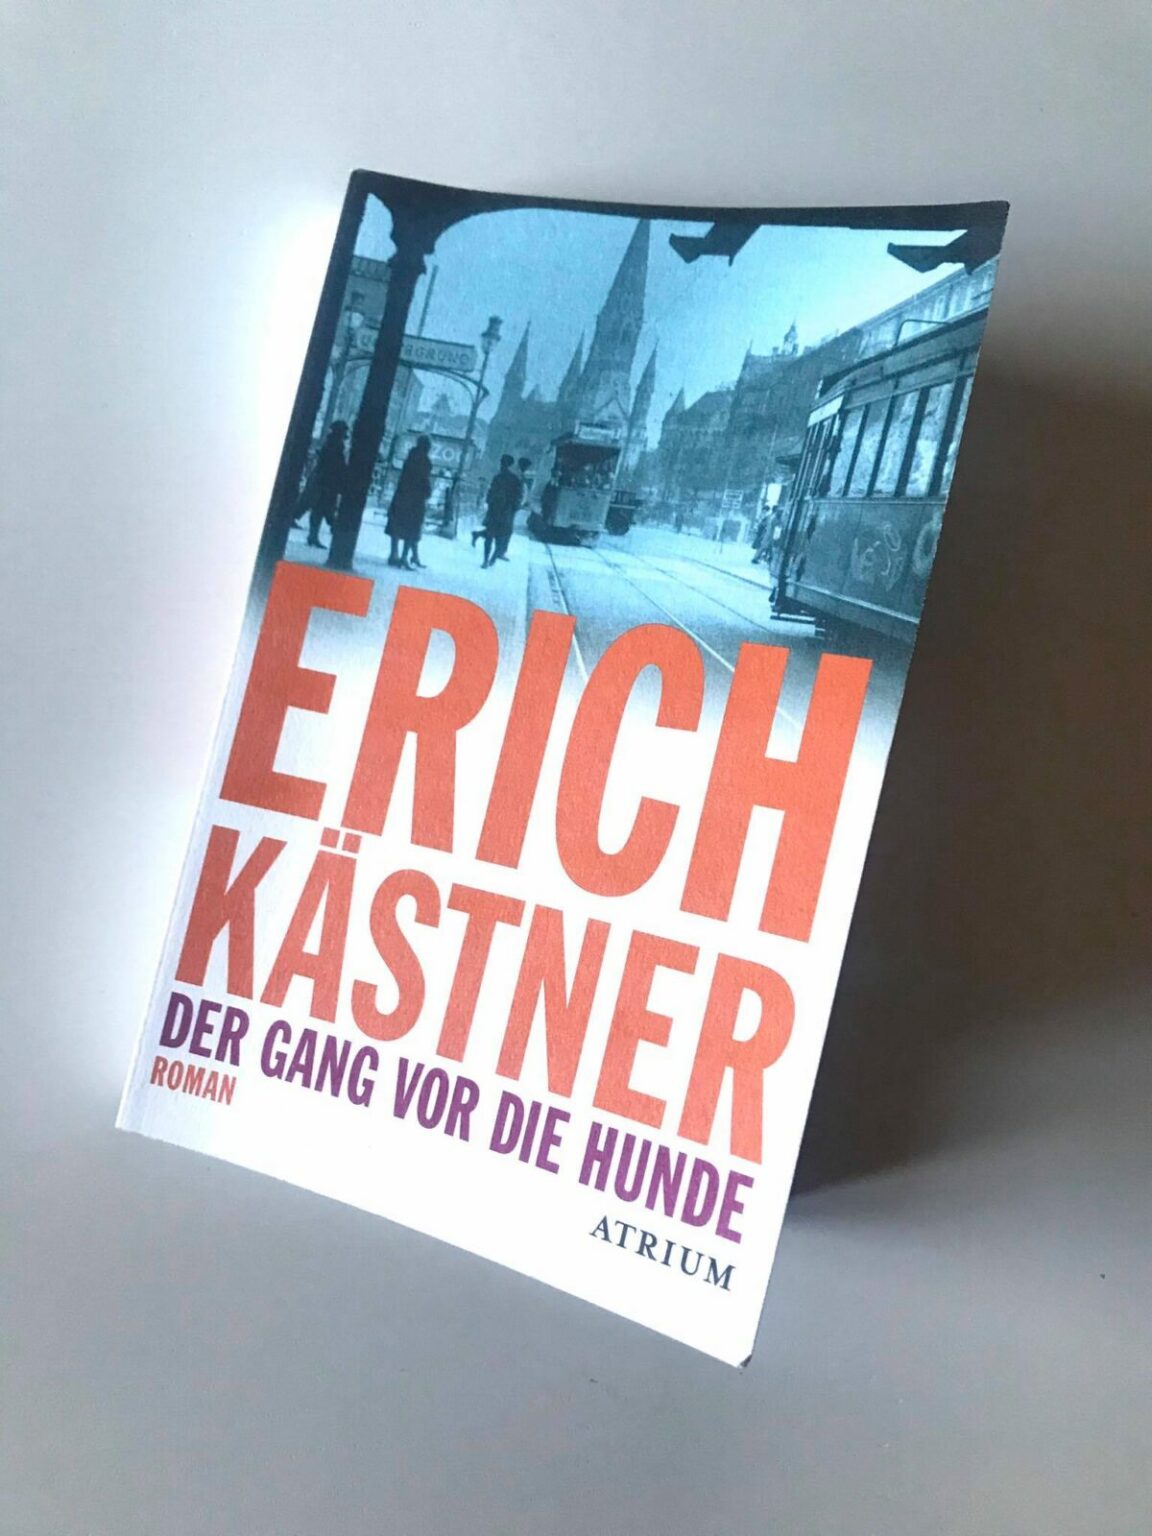 Buchkritik &quot;Der Gang vor die Hunde&quot; von Erich Kästner